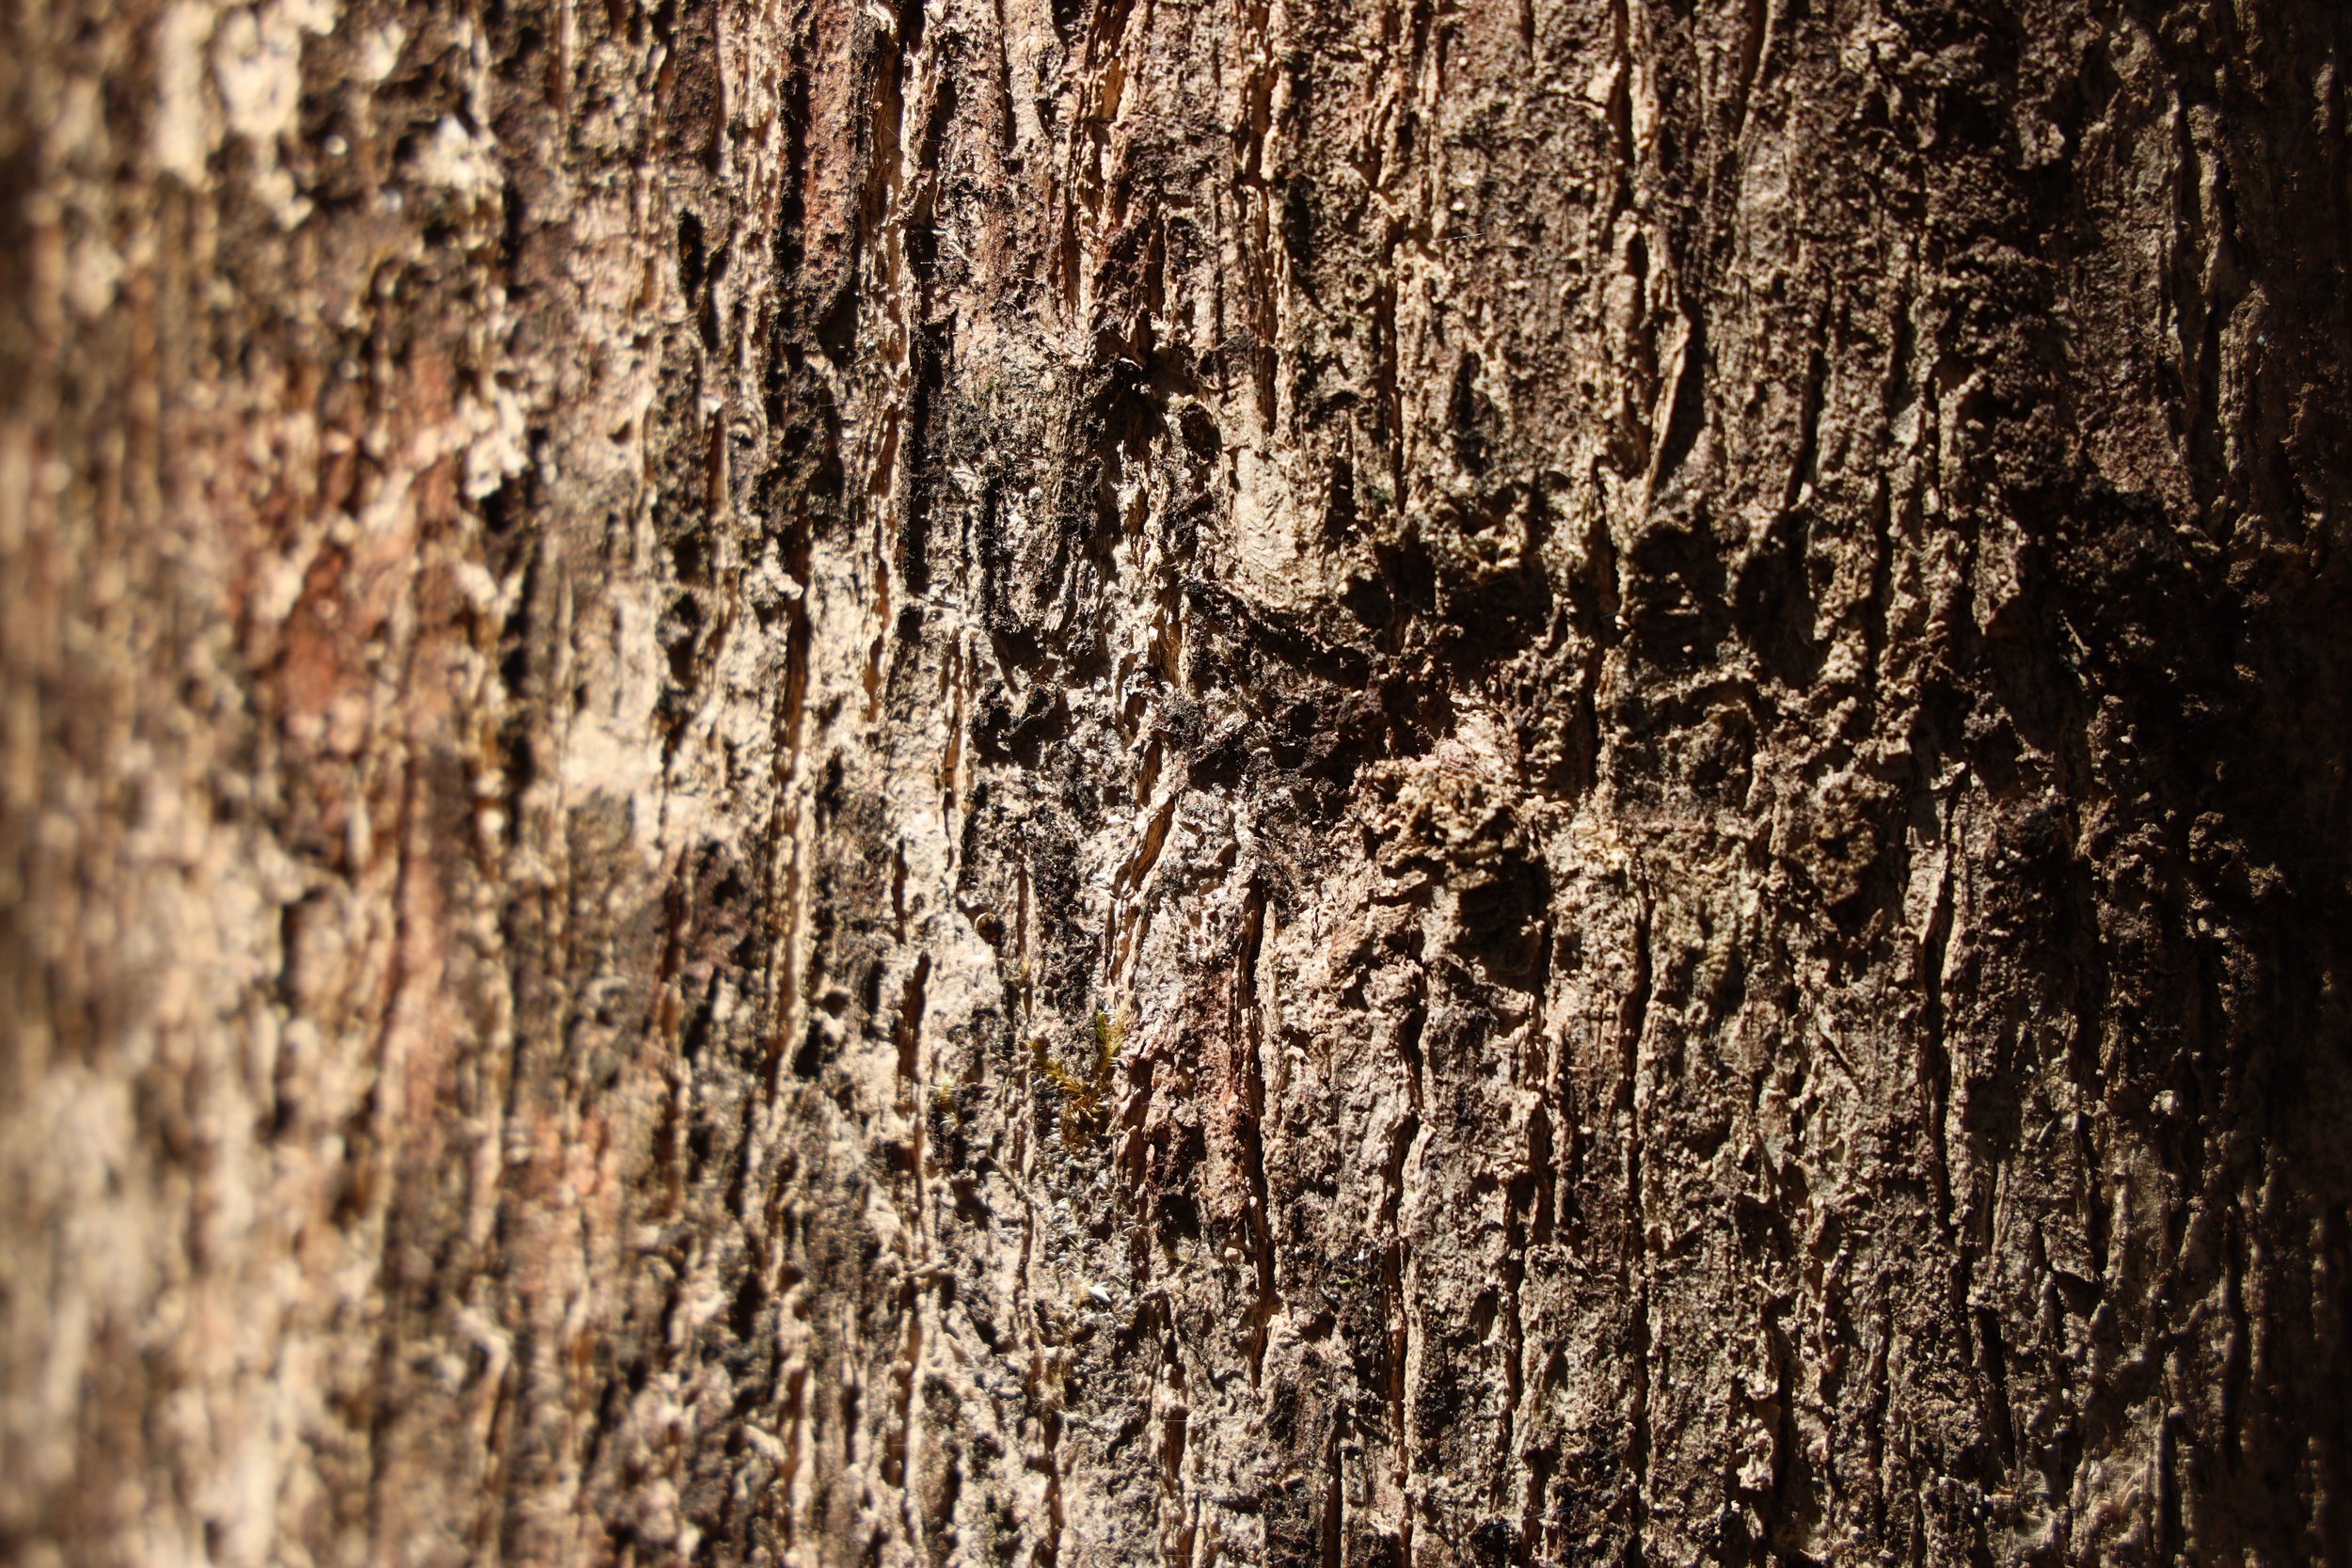  Teakwood tree bark. 